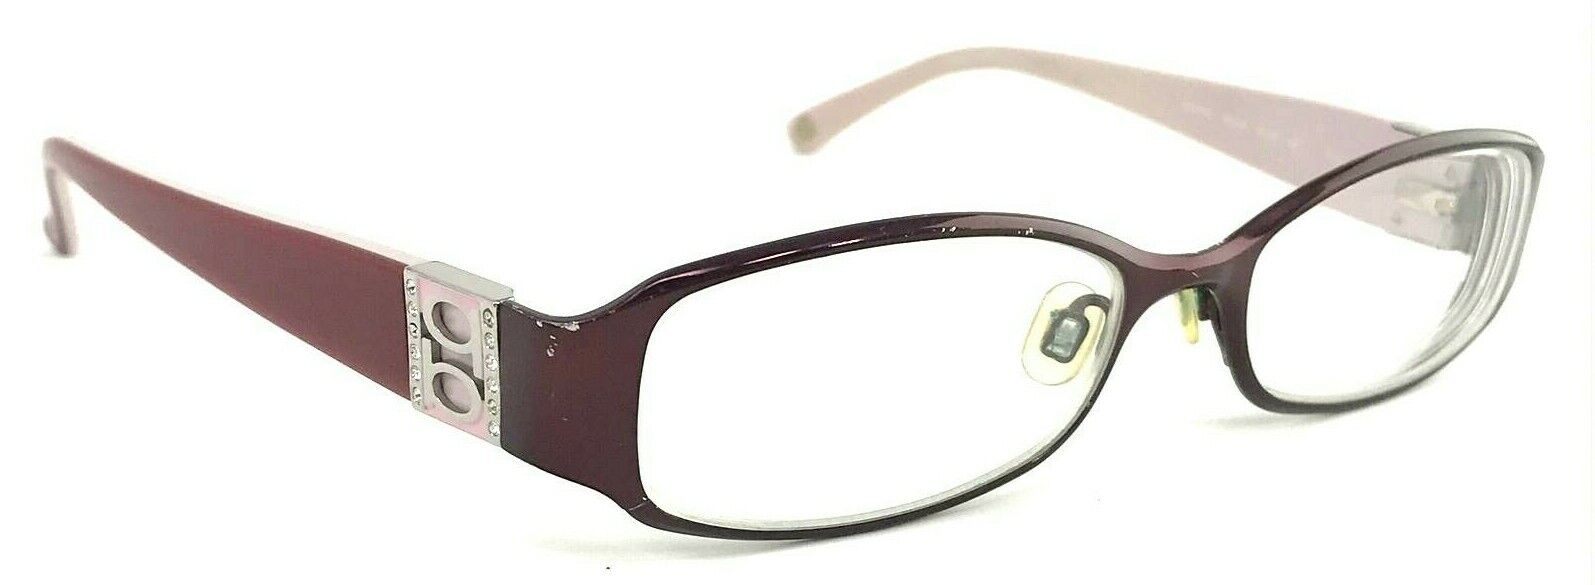 BEBE “BIZARRE” BB5026 Plum Violet Burgundy Polished 52-16-135 Eyeglasses Frame